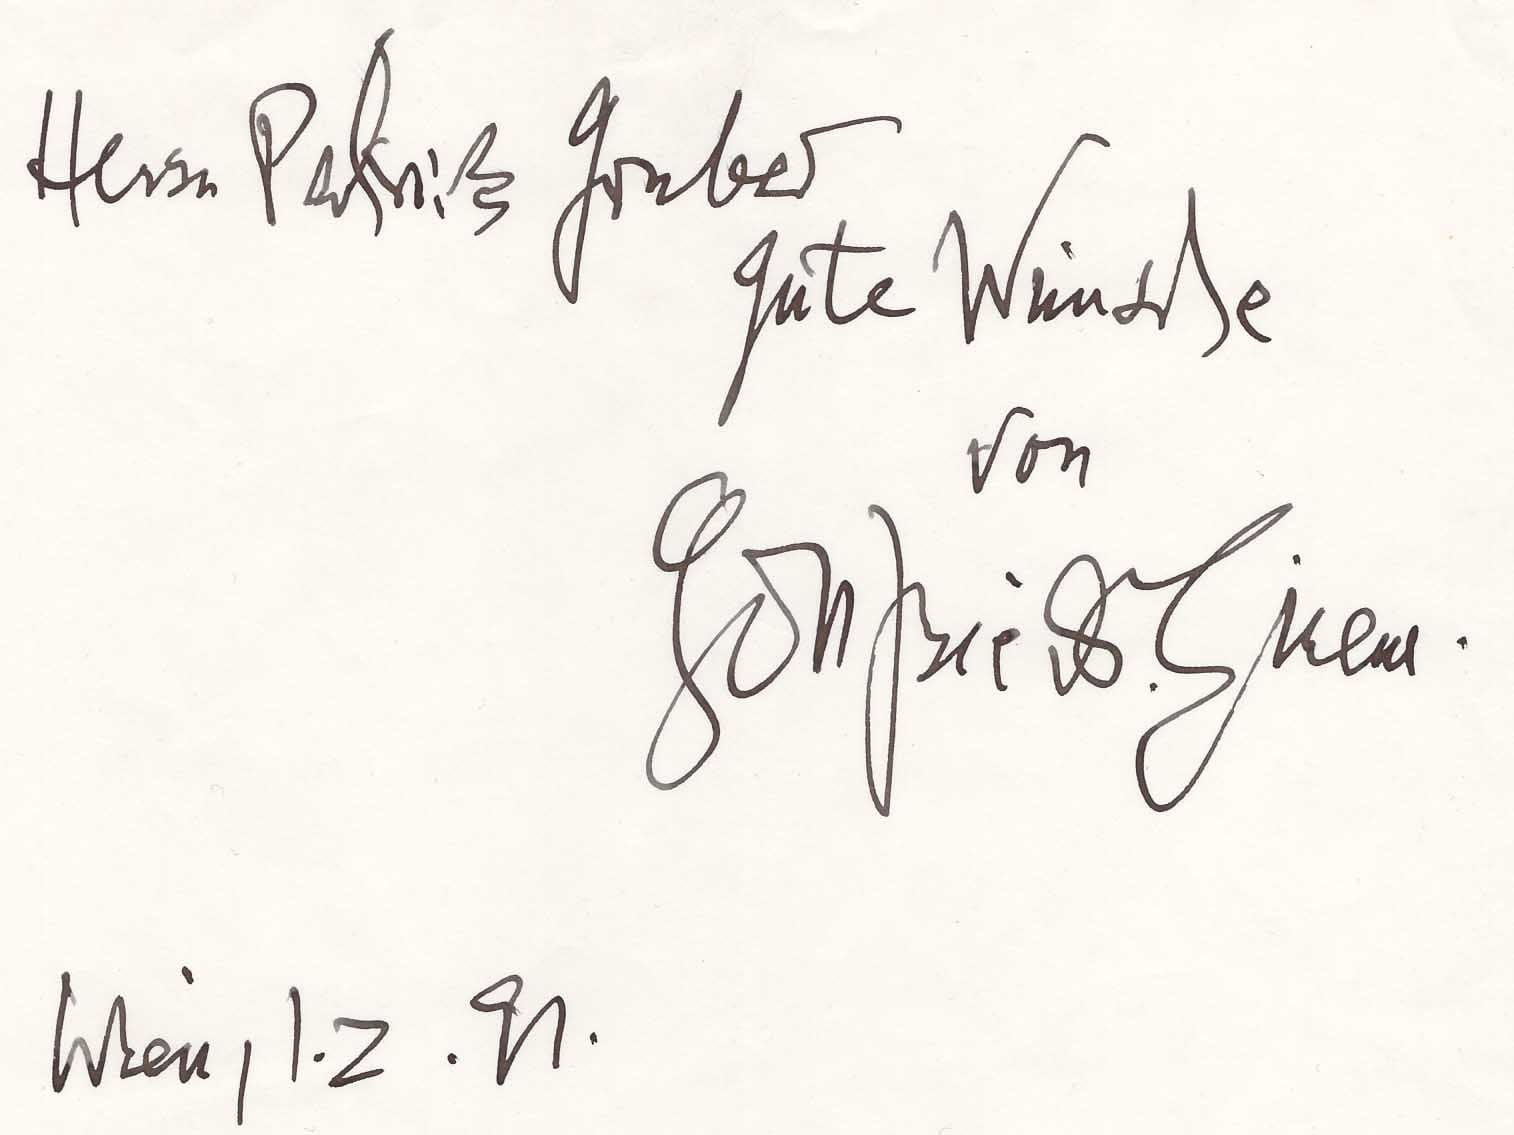 Gottfried von Einem Autograph Autogramm | ID 7331799793813